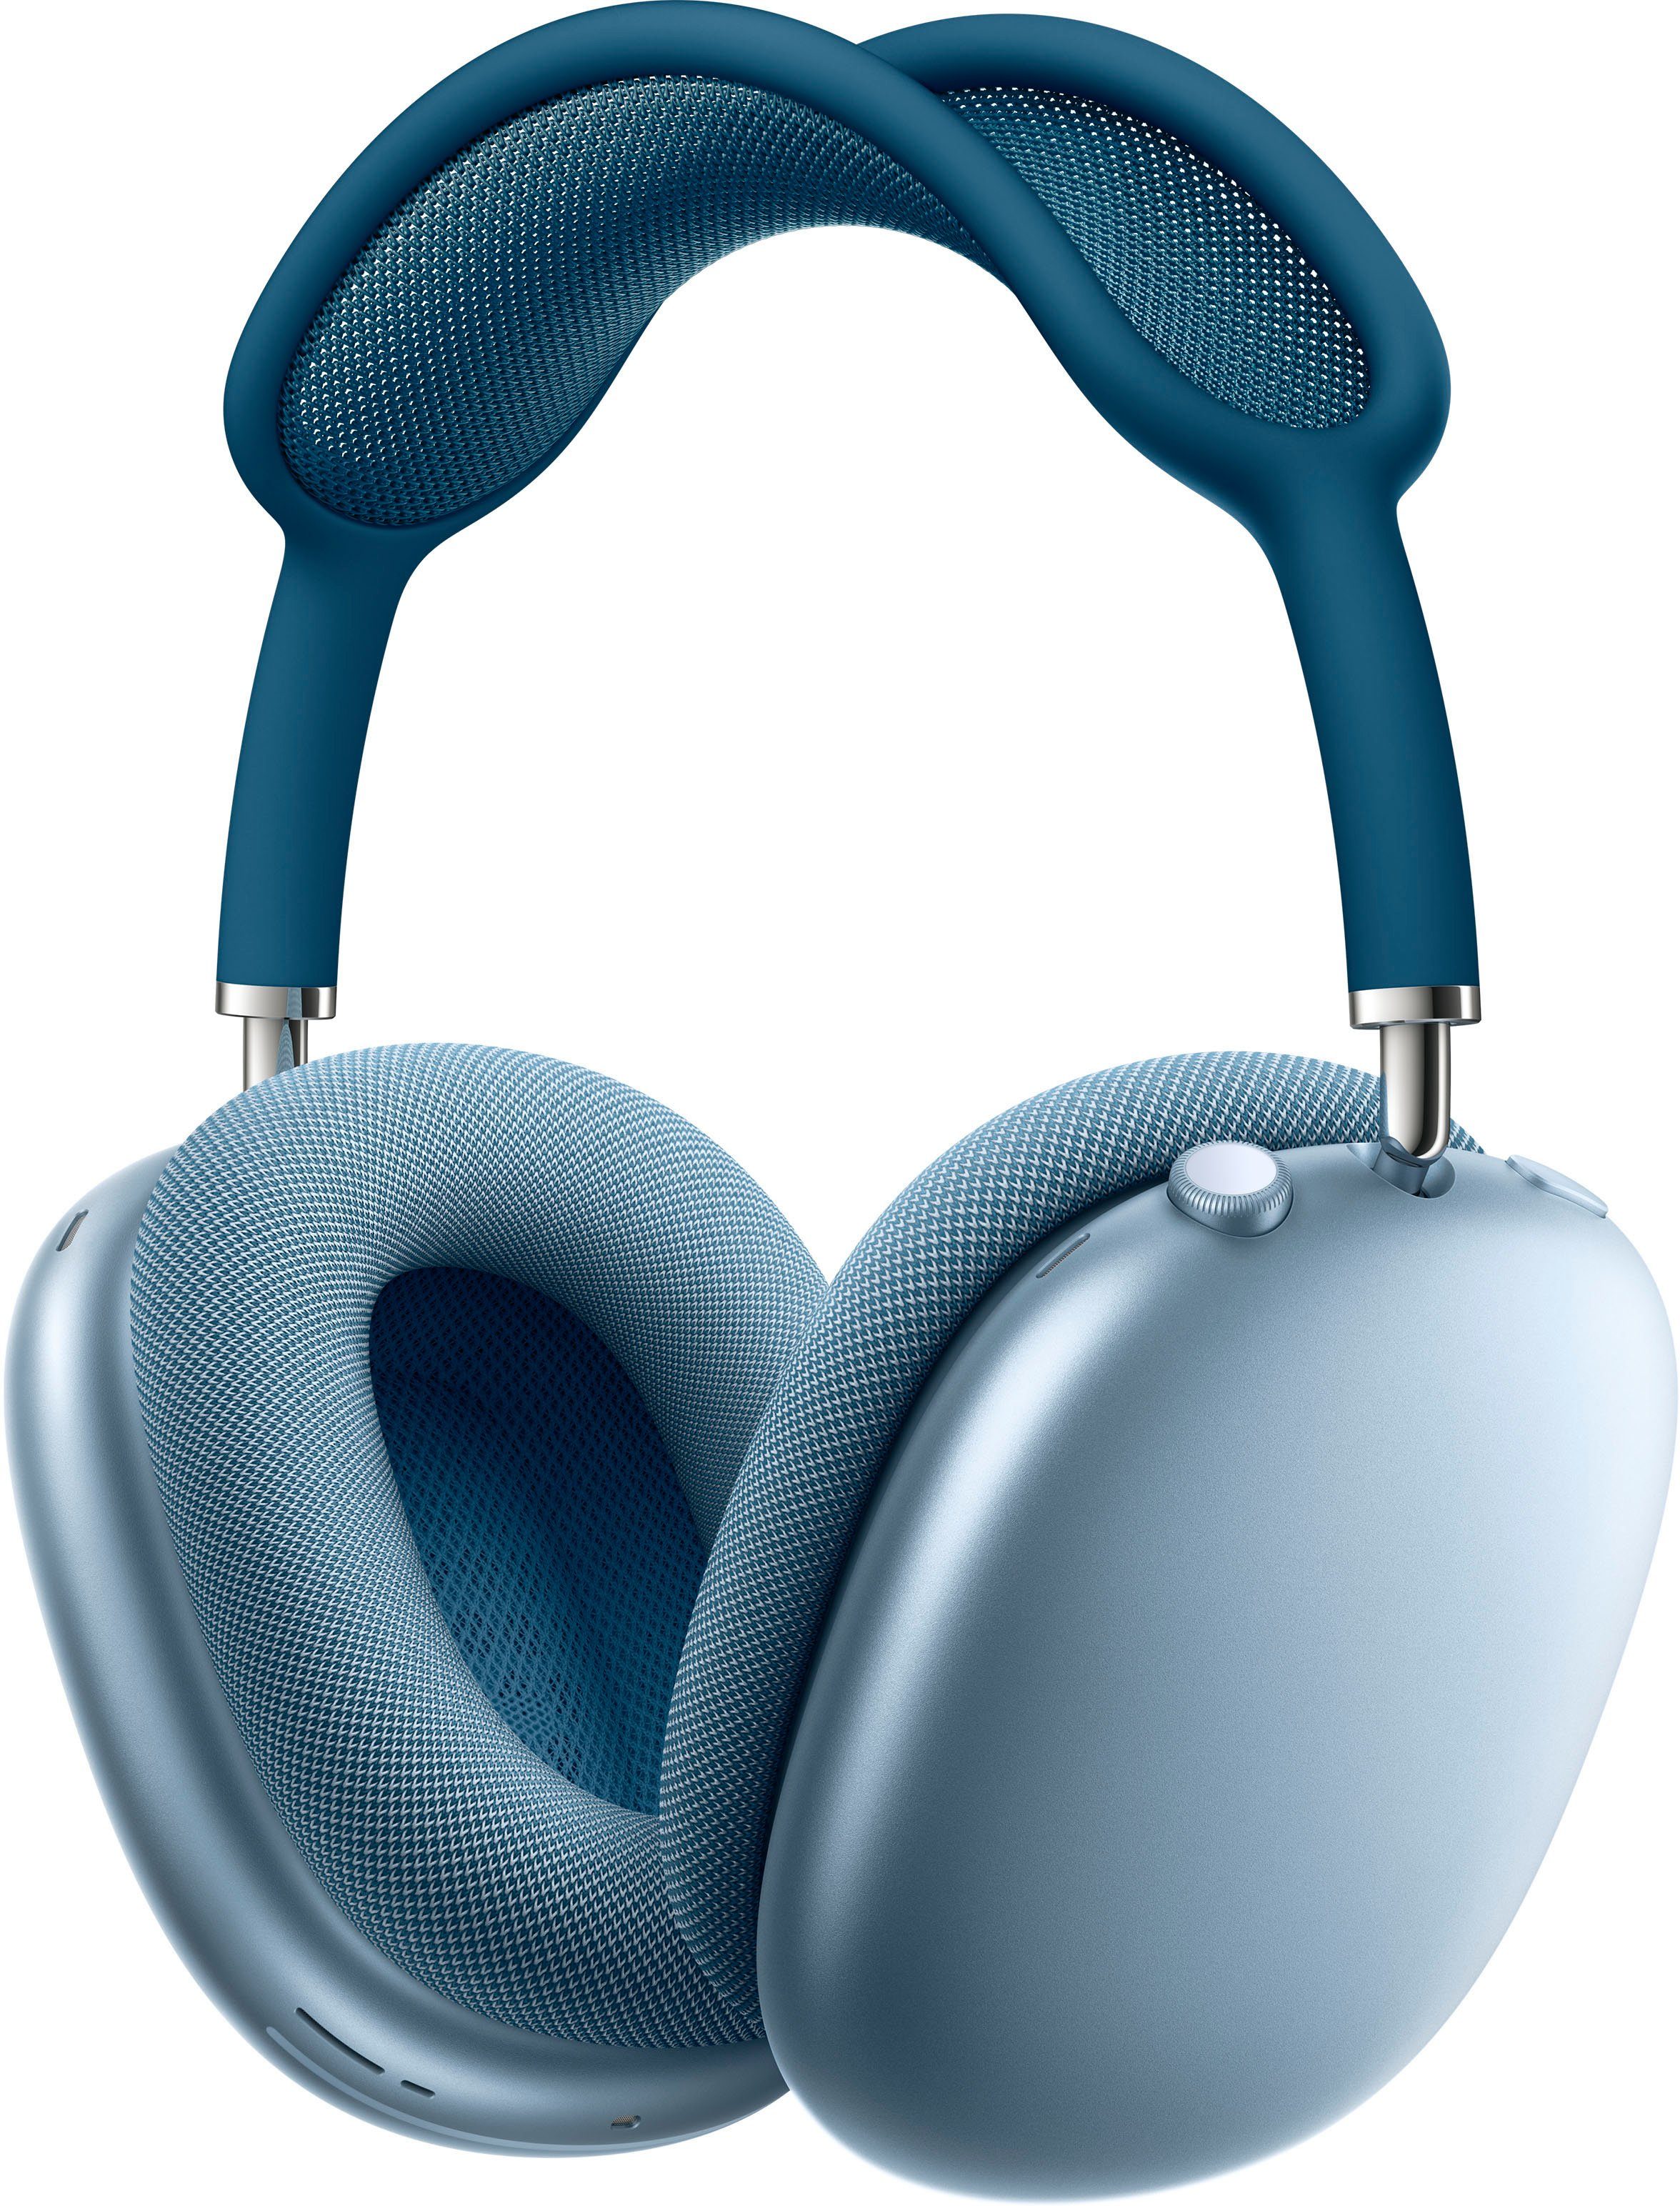 Apple AirPods Max Over-Ear-Kopfhörer (Active Noise Cancelling (ANC), Rauschunterdrückung, Sprachsteuerung, Transparenzmodus, integrierte Steuerung für Anrufe und Musik, kompatibel mit Siri, Siri, Bluetooth) blau